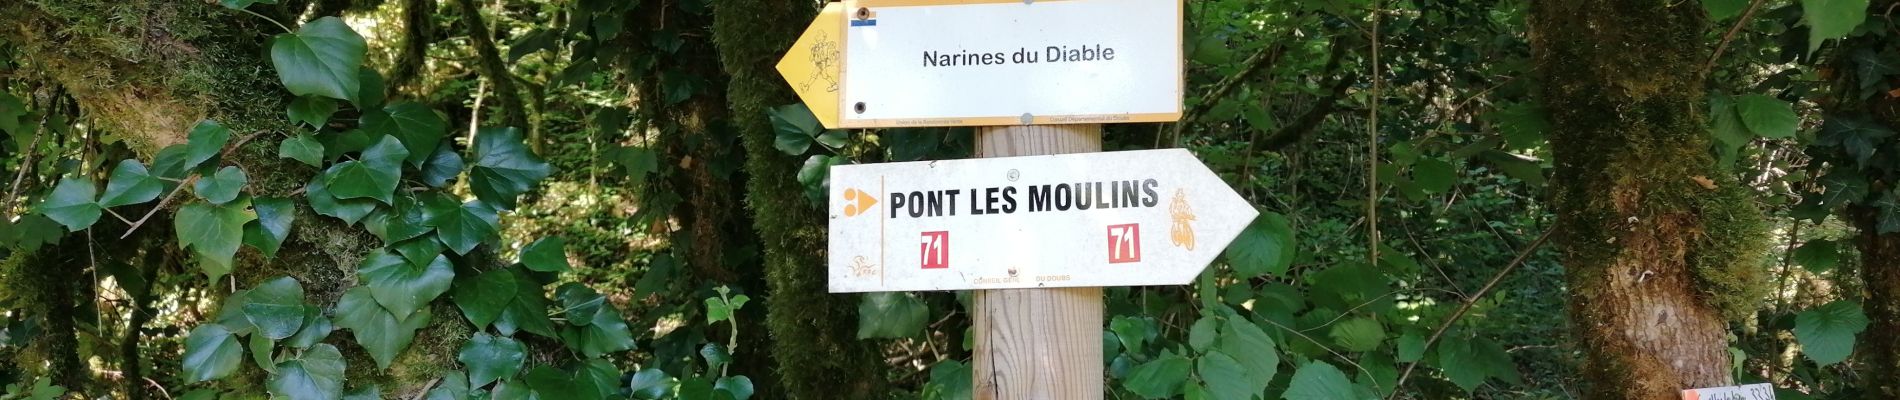 Randonnée Marche Pont-les-Moulins - 2020 07 12 Guillon, les narines du diable - Photo